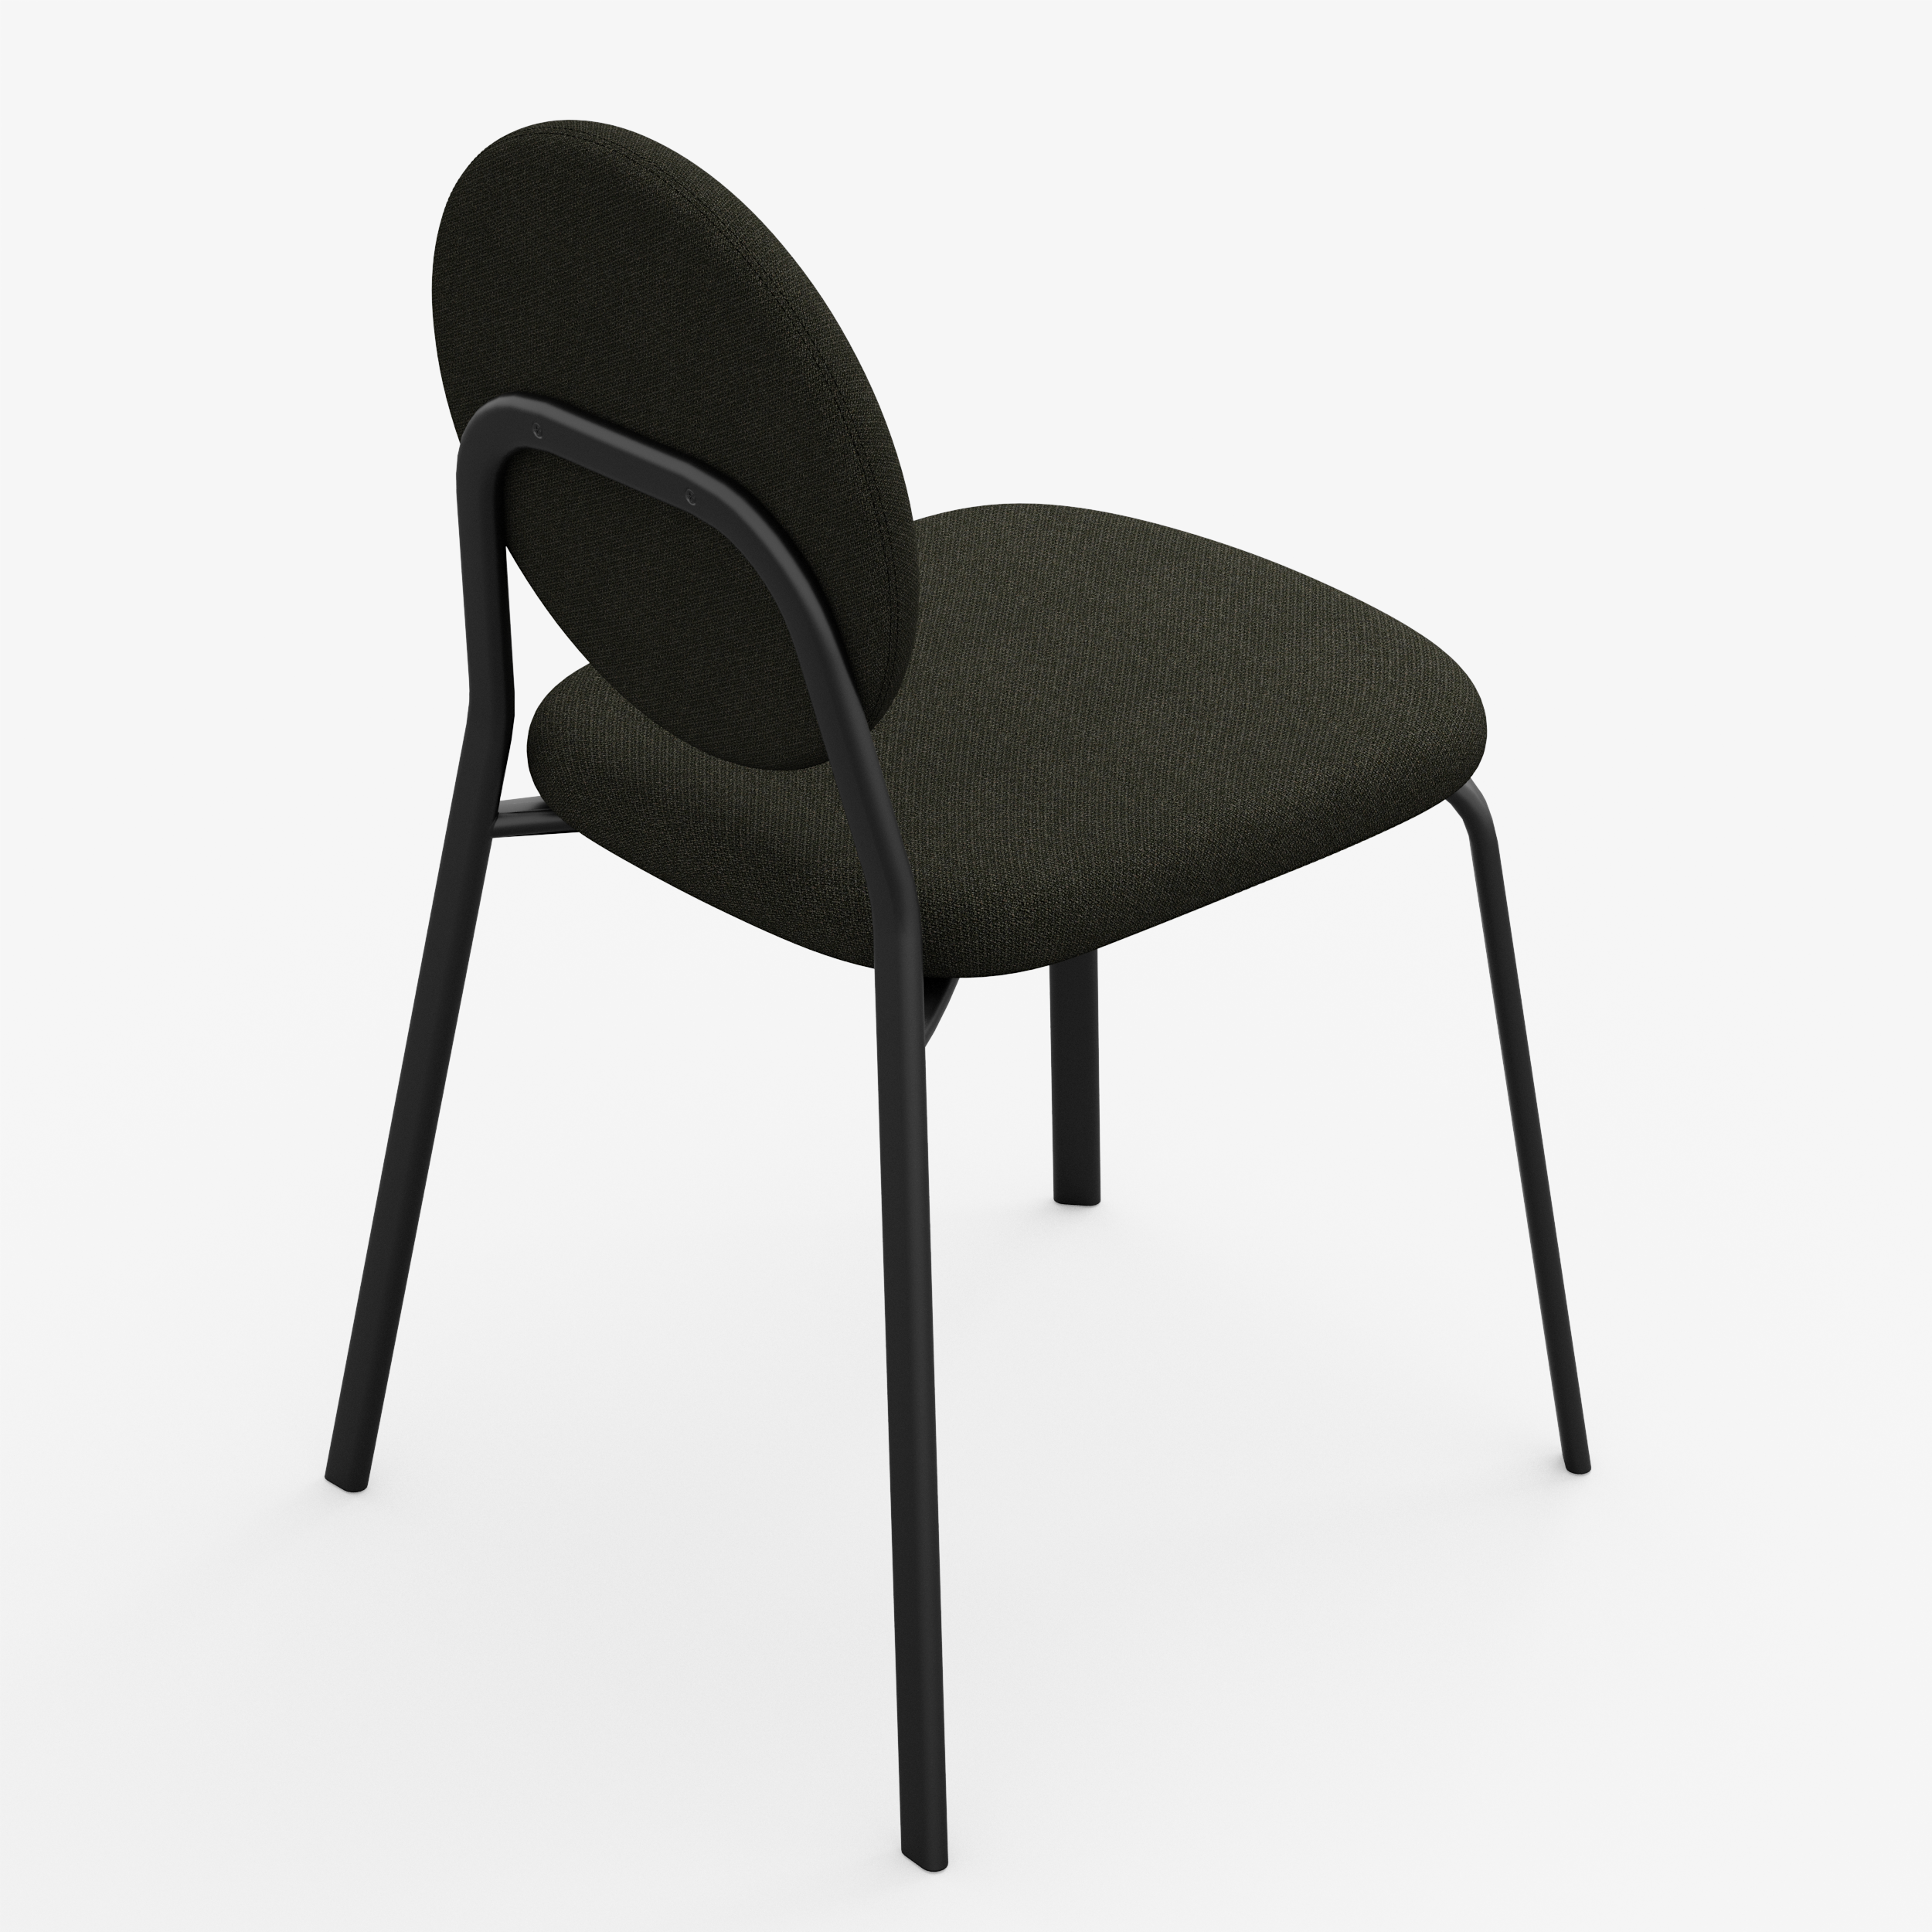 Form - Chair (Round, Black)